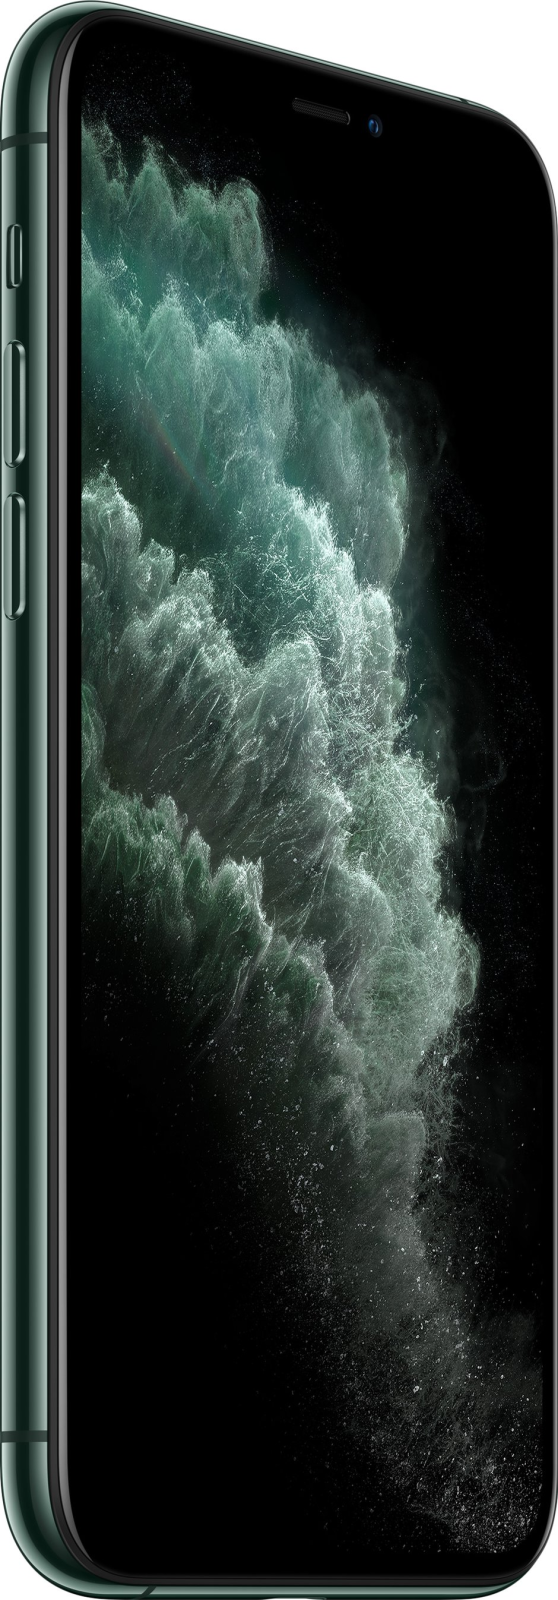 Смартфон APPLE iPhone 11 Pro 64GB темно-зеленый (MWC62) - Фото 2